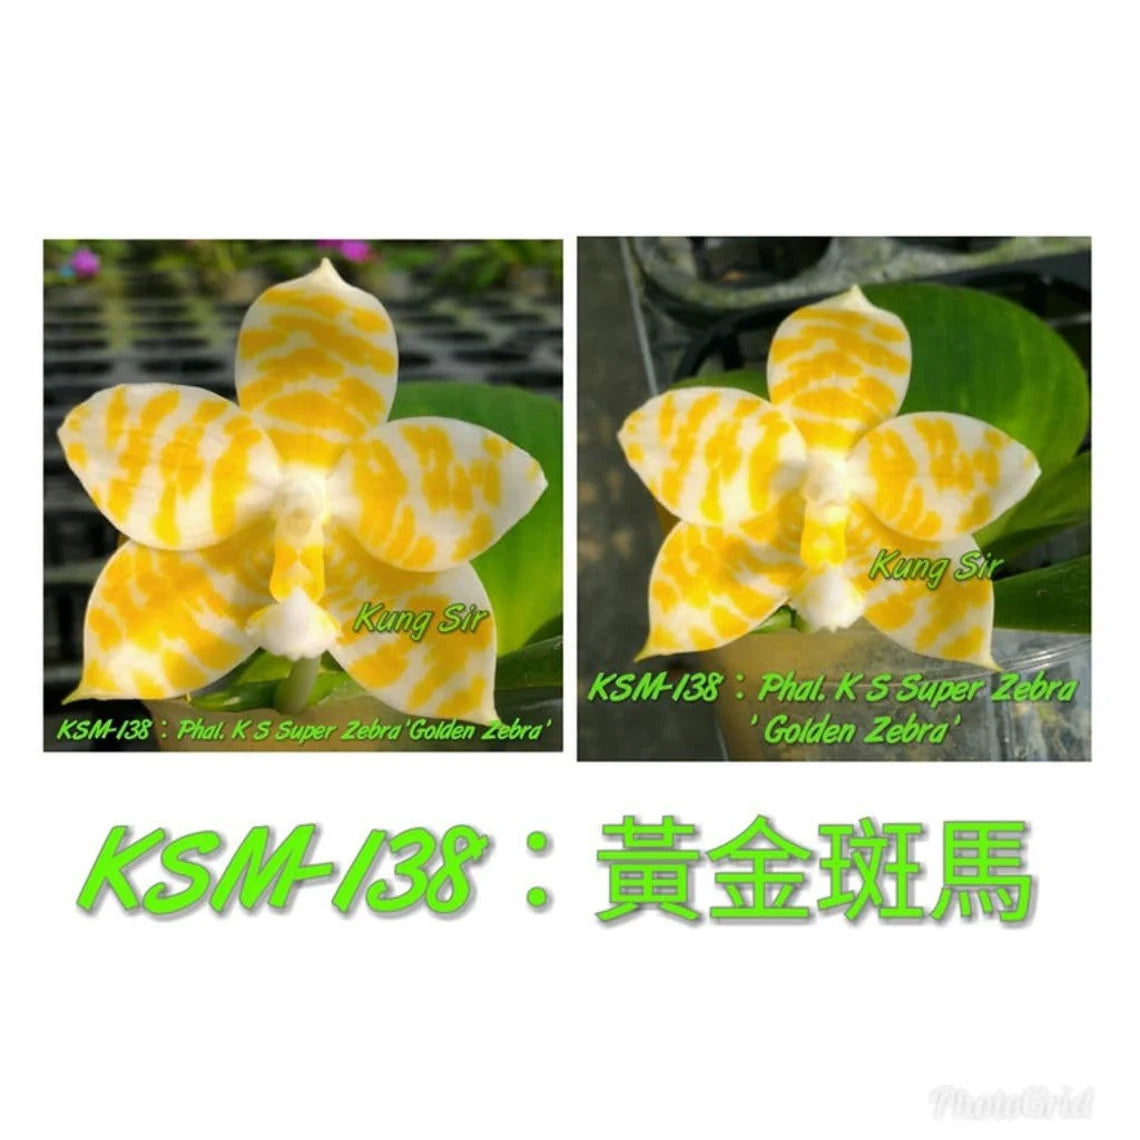 Very rare! Phal. KS Super Zebra 'Golden Zebra' (KSM-138) - lemon fragrance